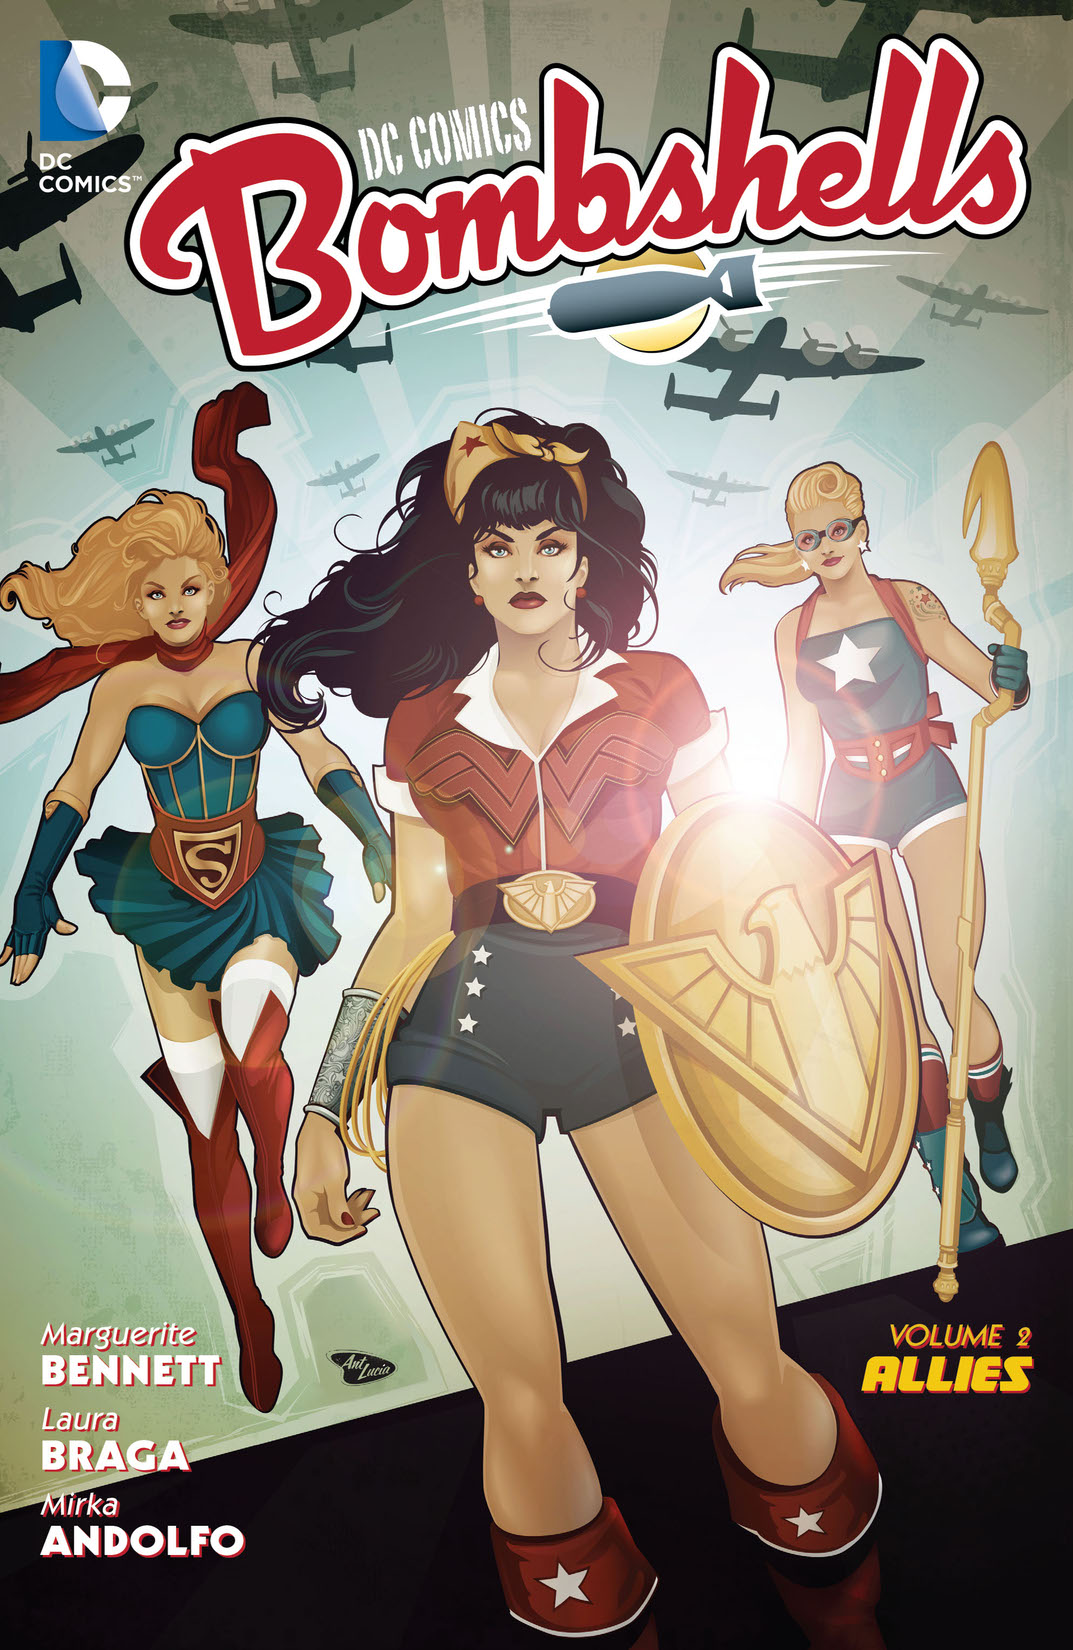 DC Comics: Bombshells Vol. 2: Allies preview images